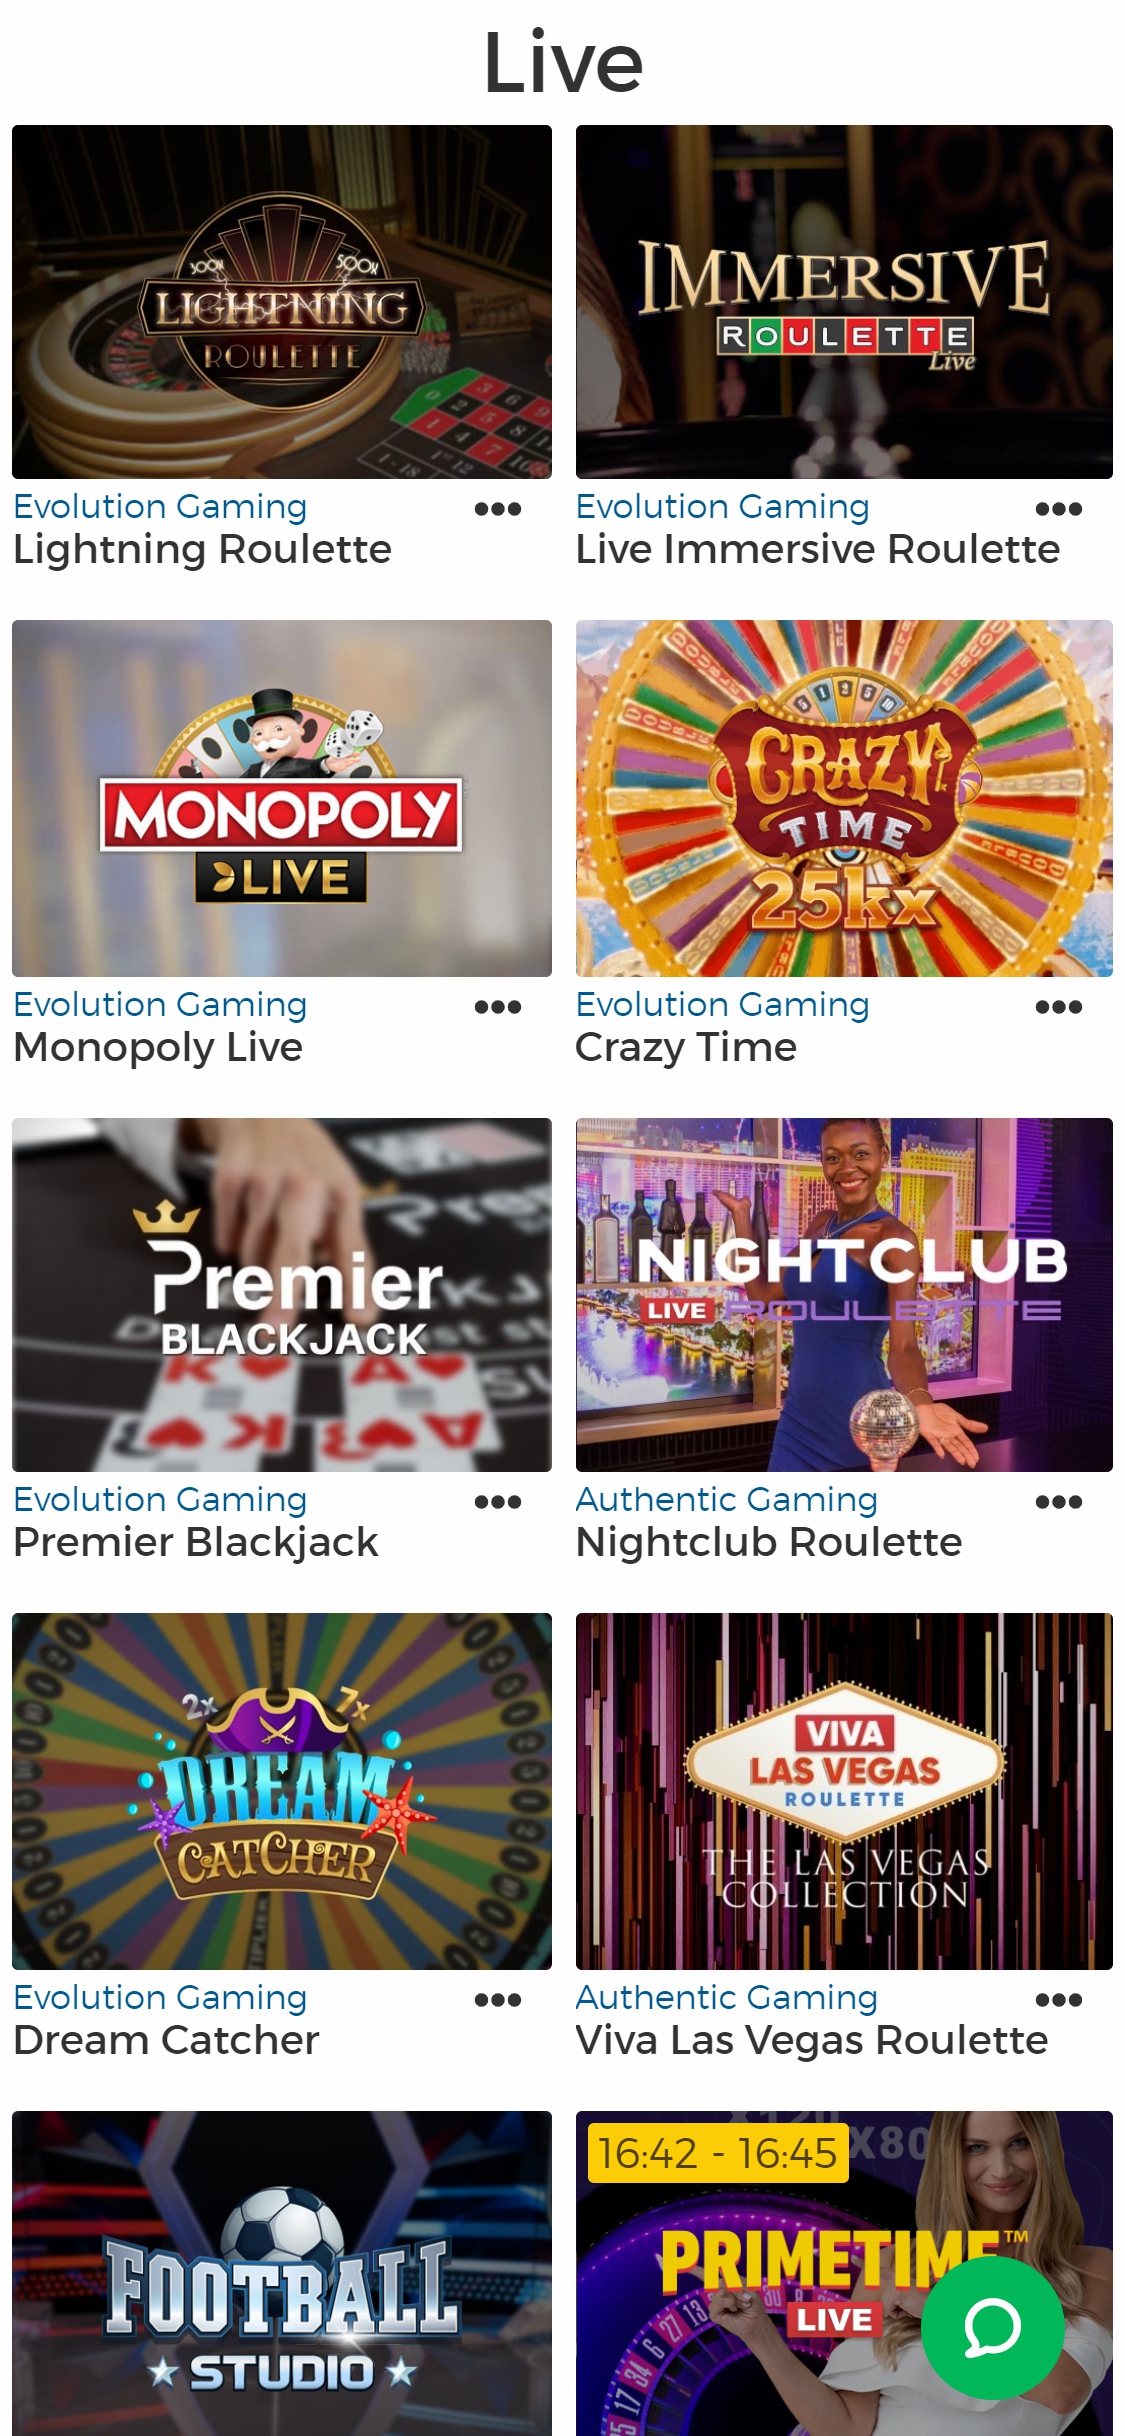 Pronto Casino Mobile Live Dealer Games Review